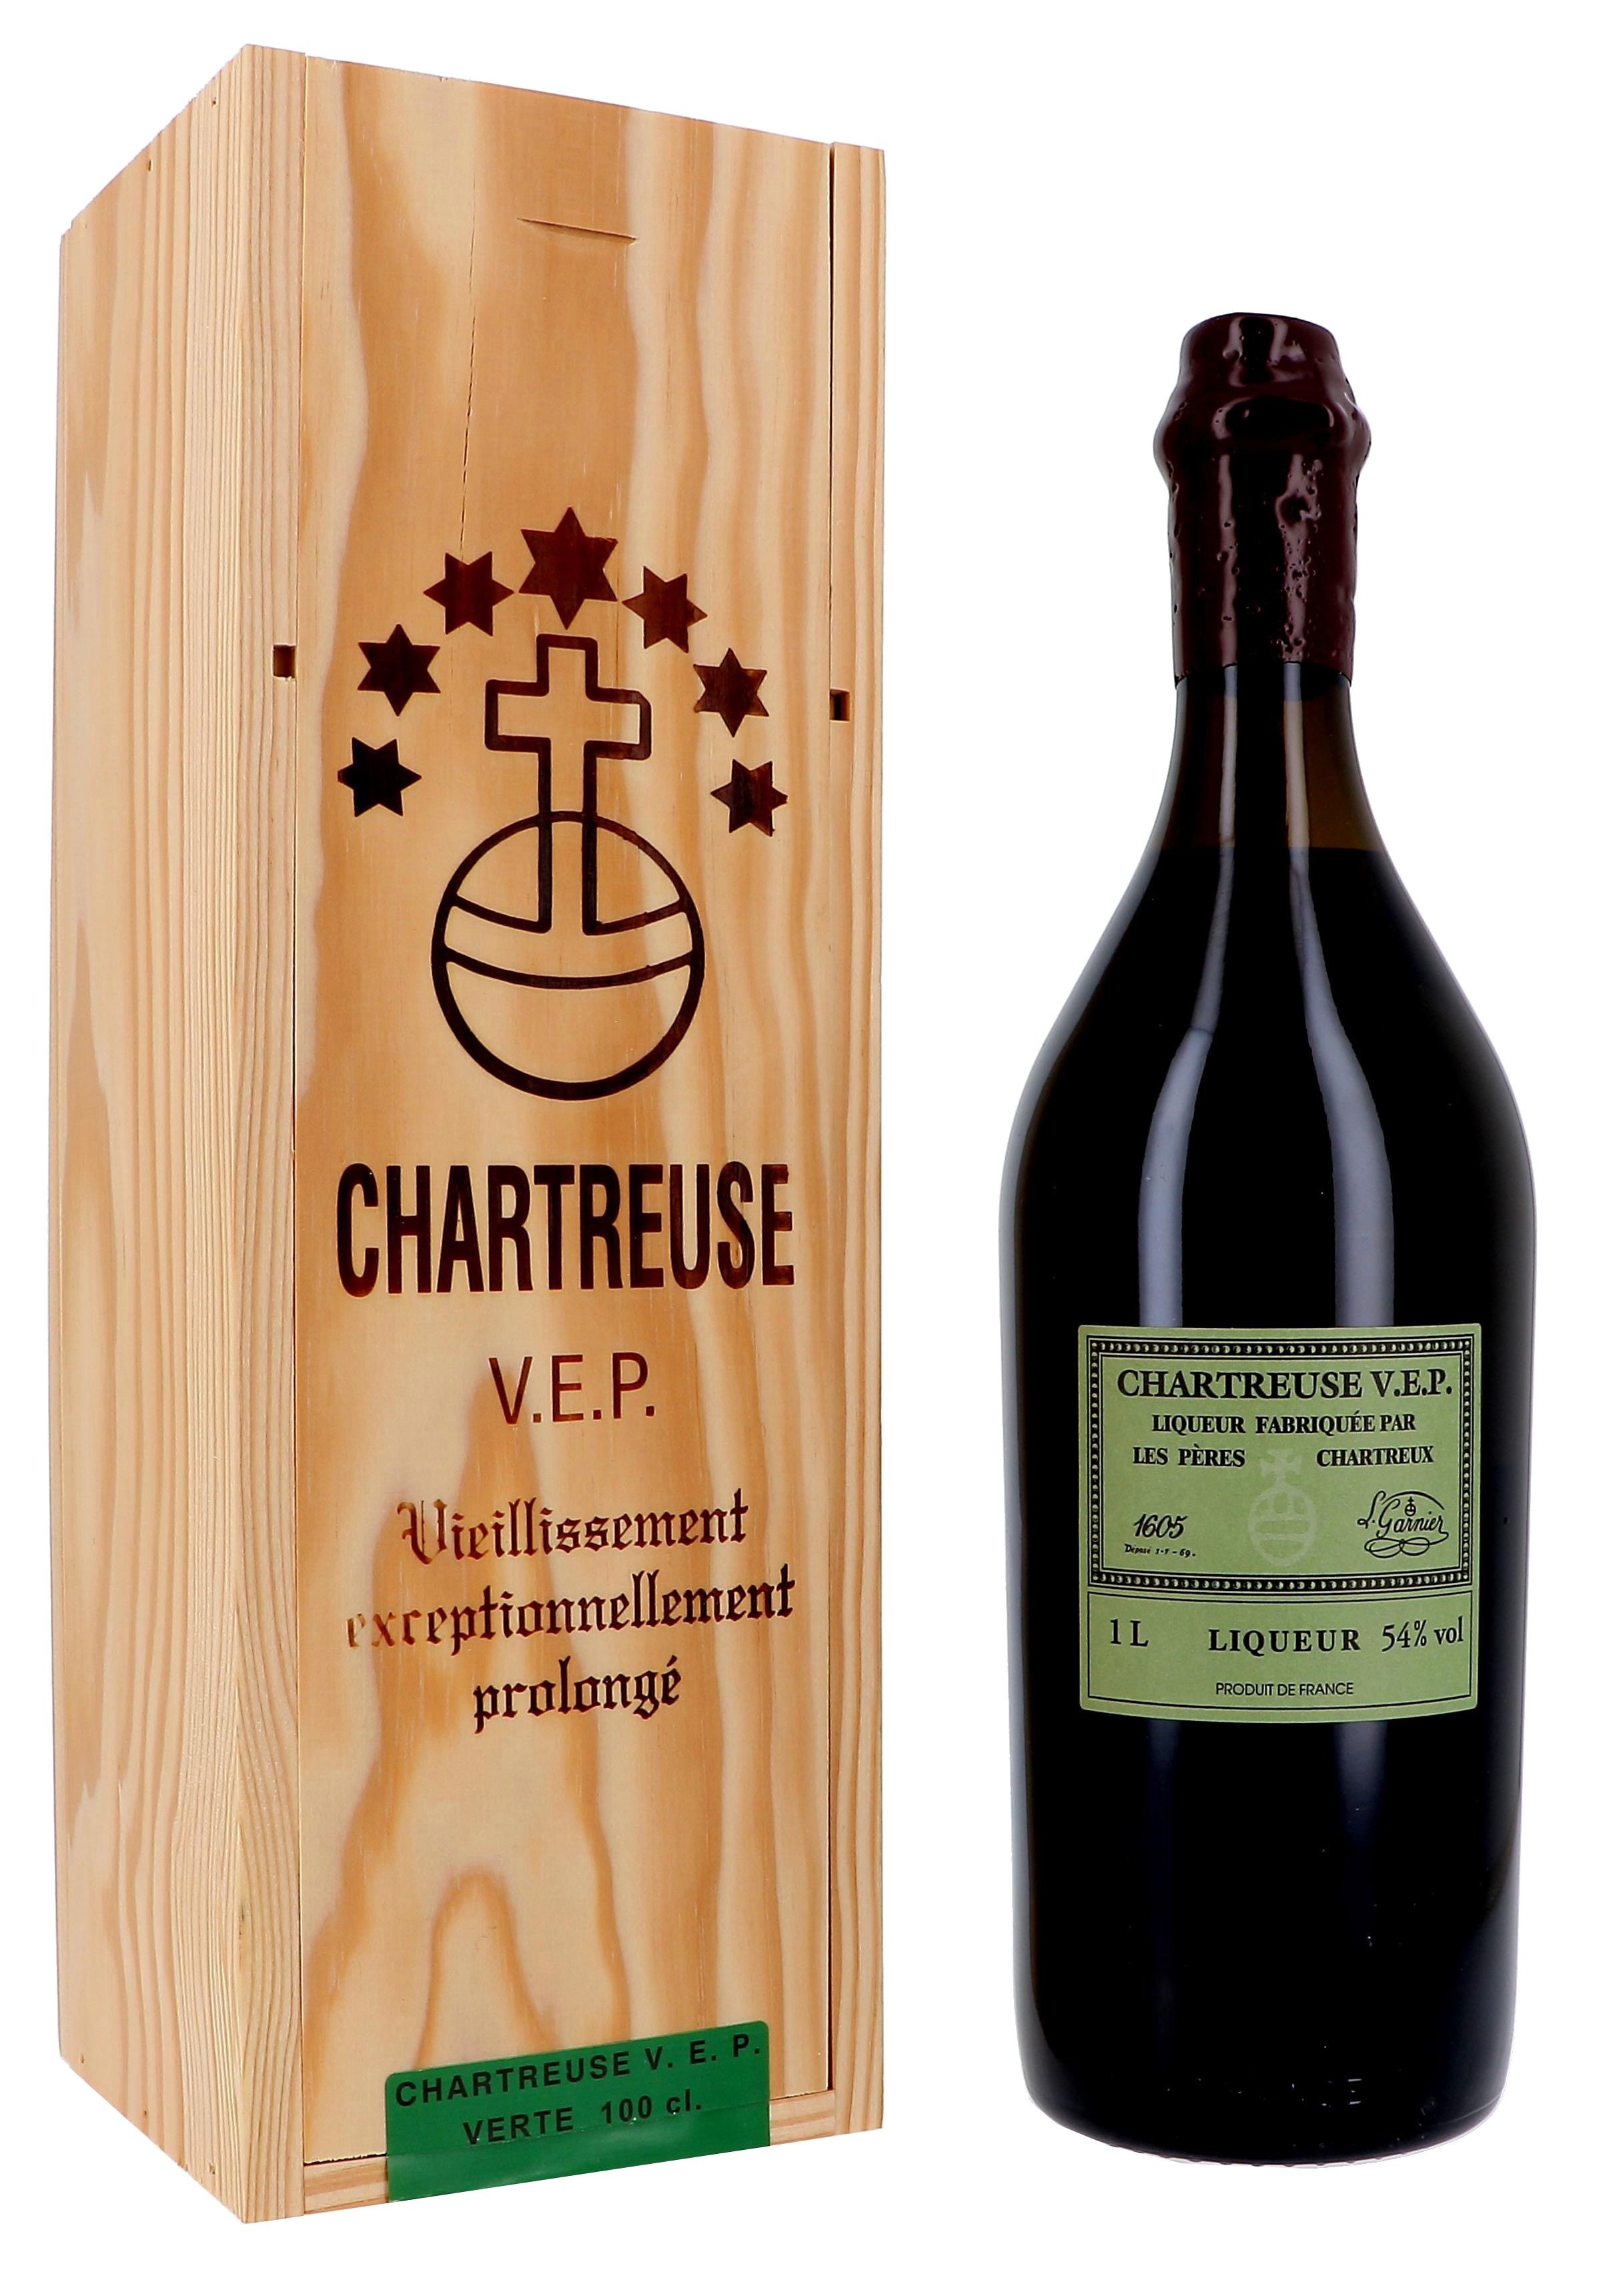 Chartreuse VEP 1L 54% Liqueur en caisse bois